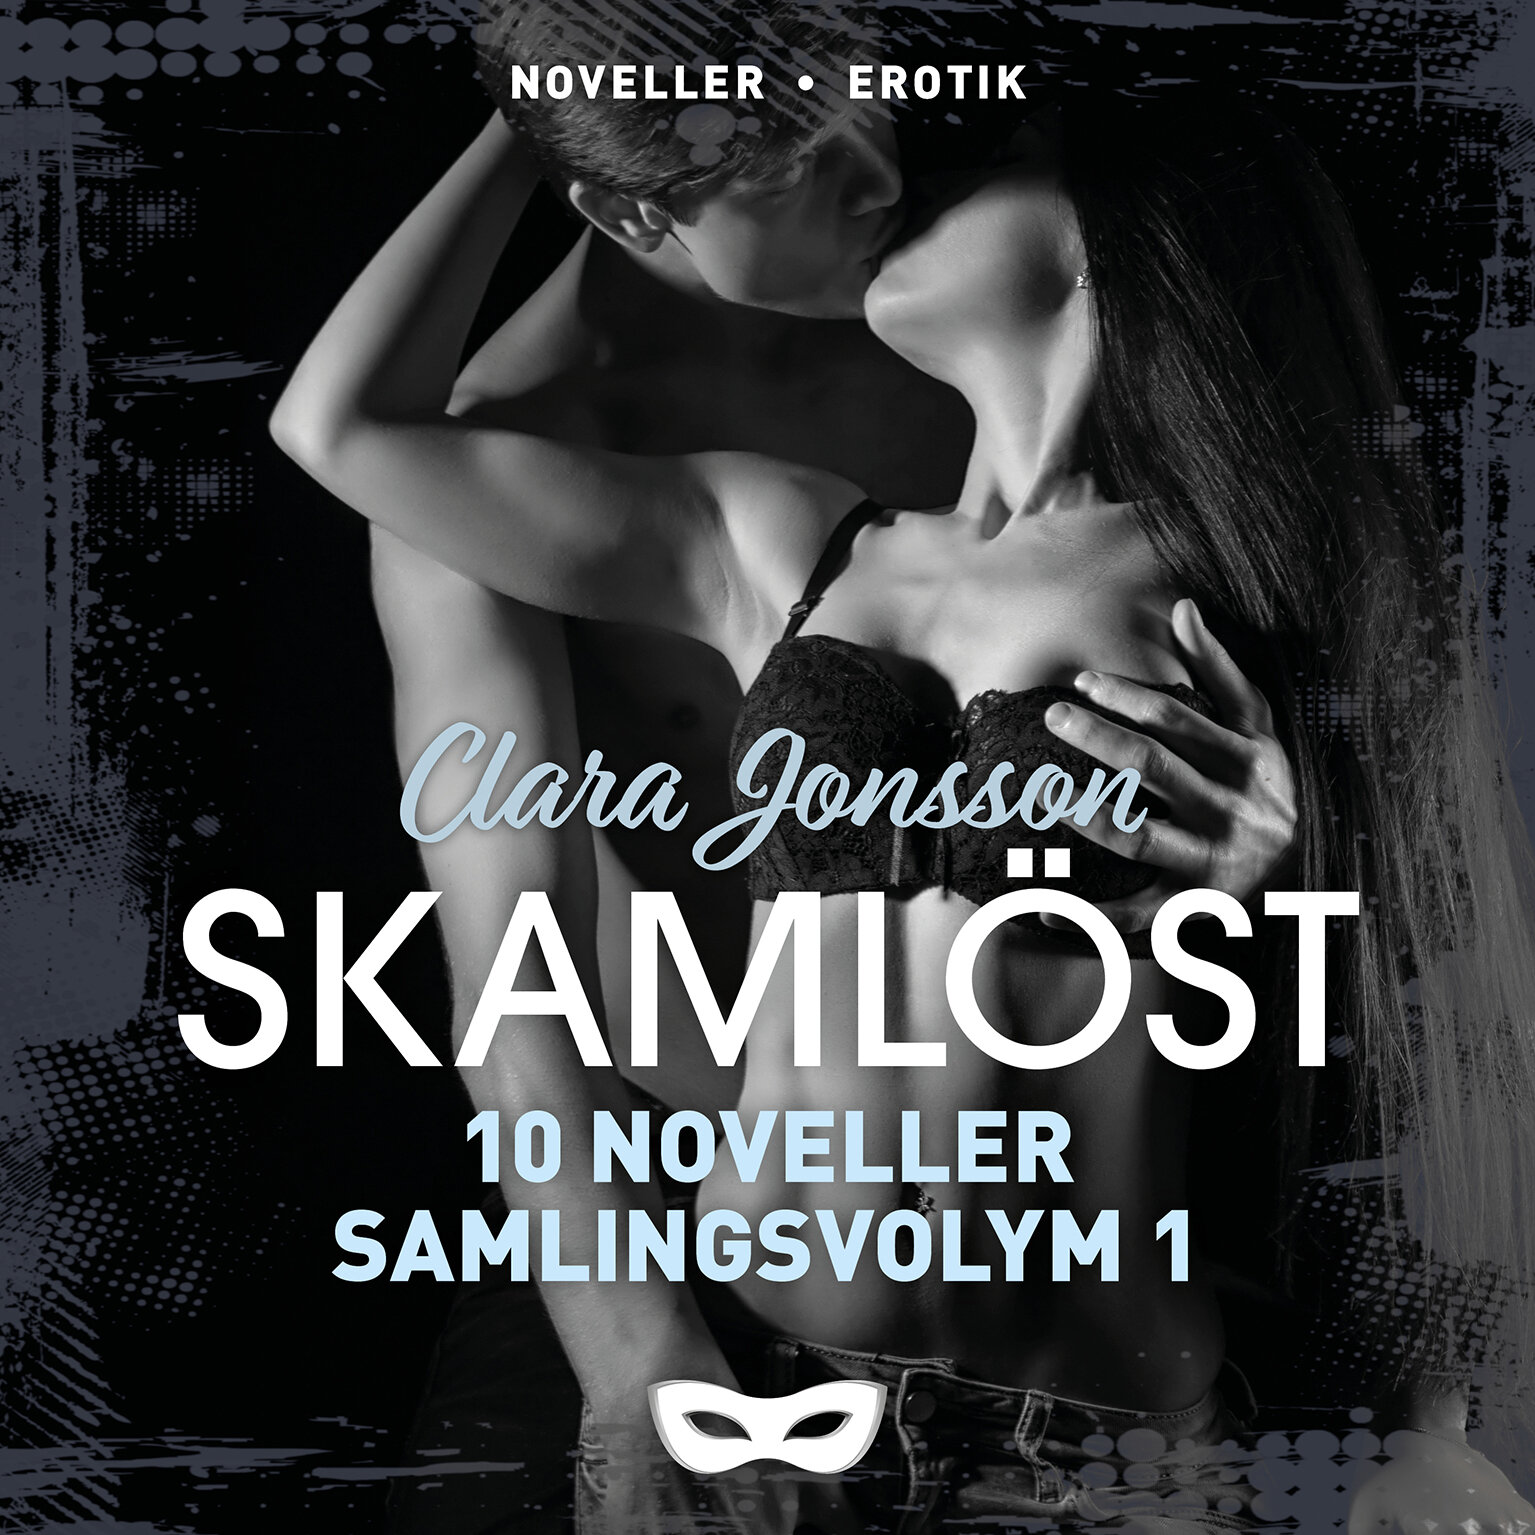 SAMSKAM1 Clara Jonsson Skamlöst 10 noveller samlingsvolym 1 omslag audio.jpg